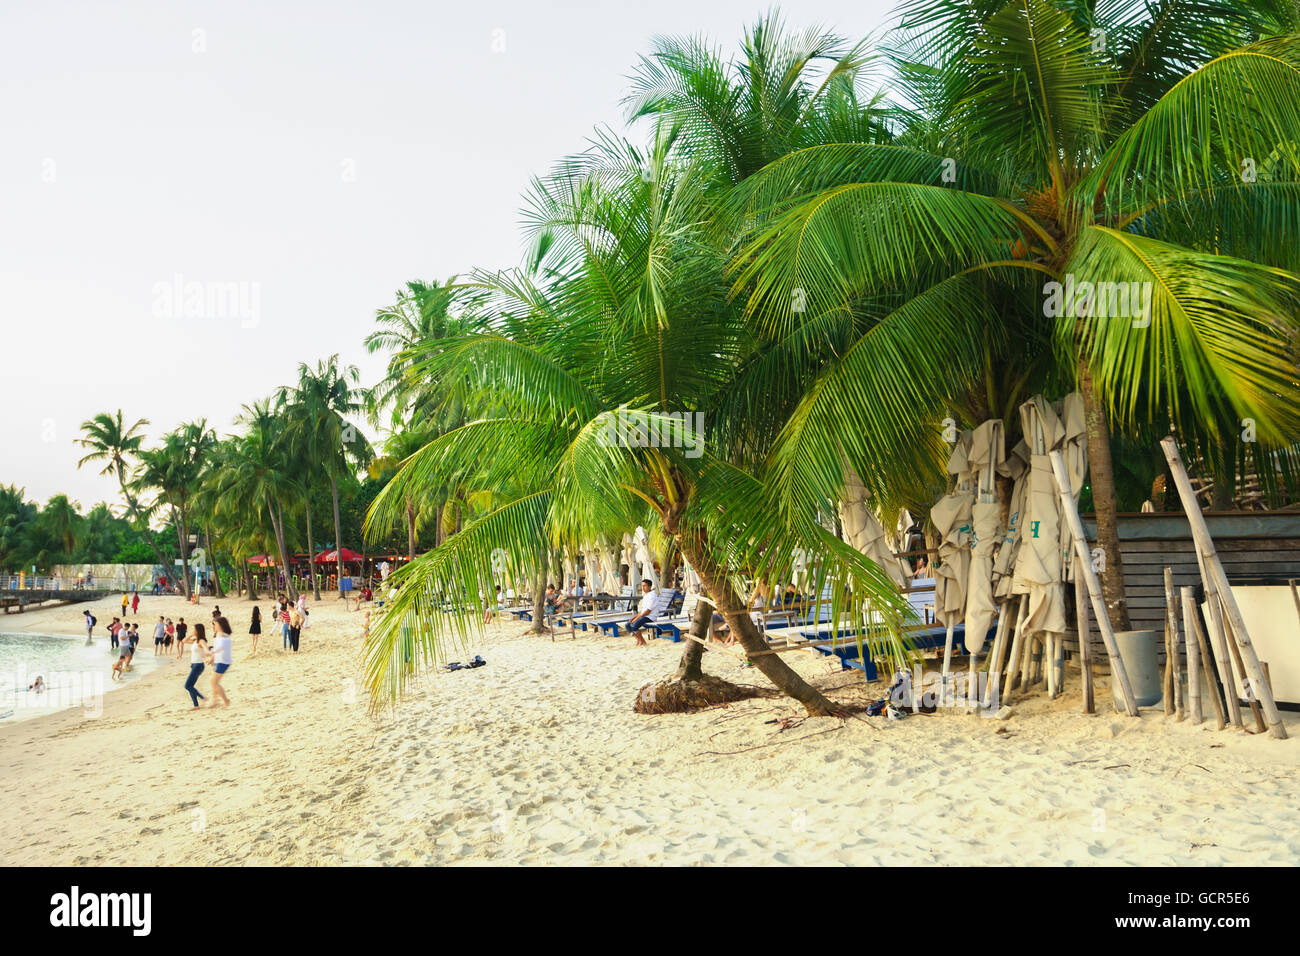 Singapour, Singapour - Mars 1, 2016 : la plage de Siloso dans l'île de Sentosa Resort de Singapour. C'est une plage artificielle avec un sable prises à partir de la Malaisie et l'Indonésie. Banque D'Images